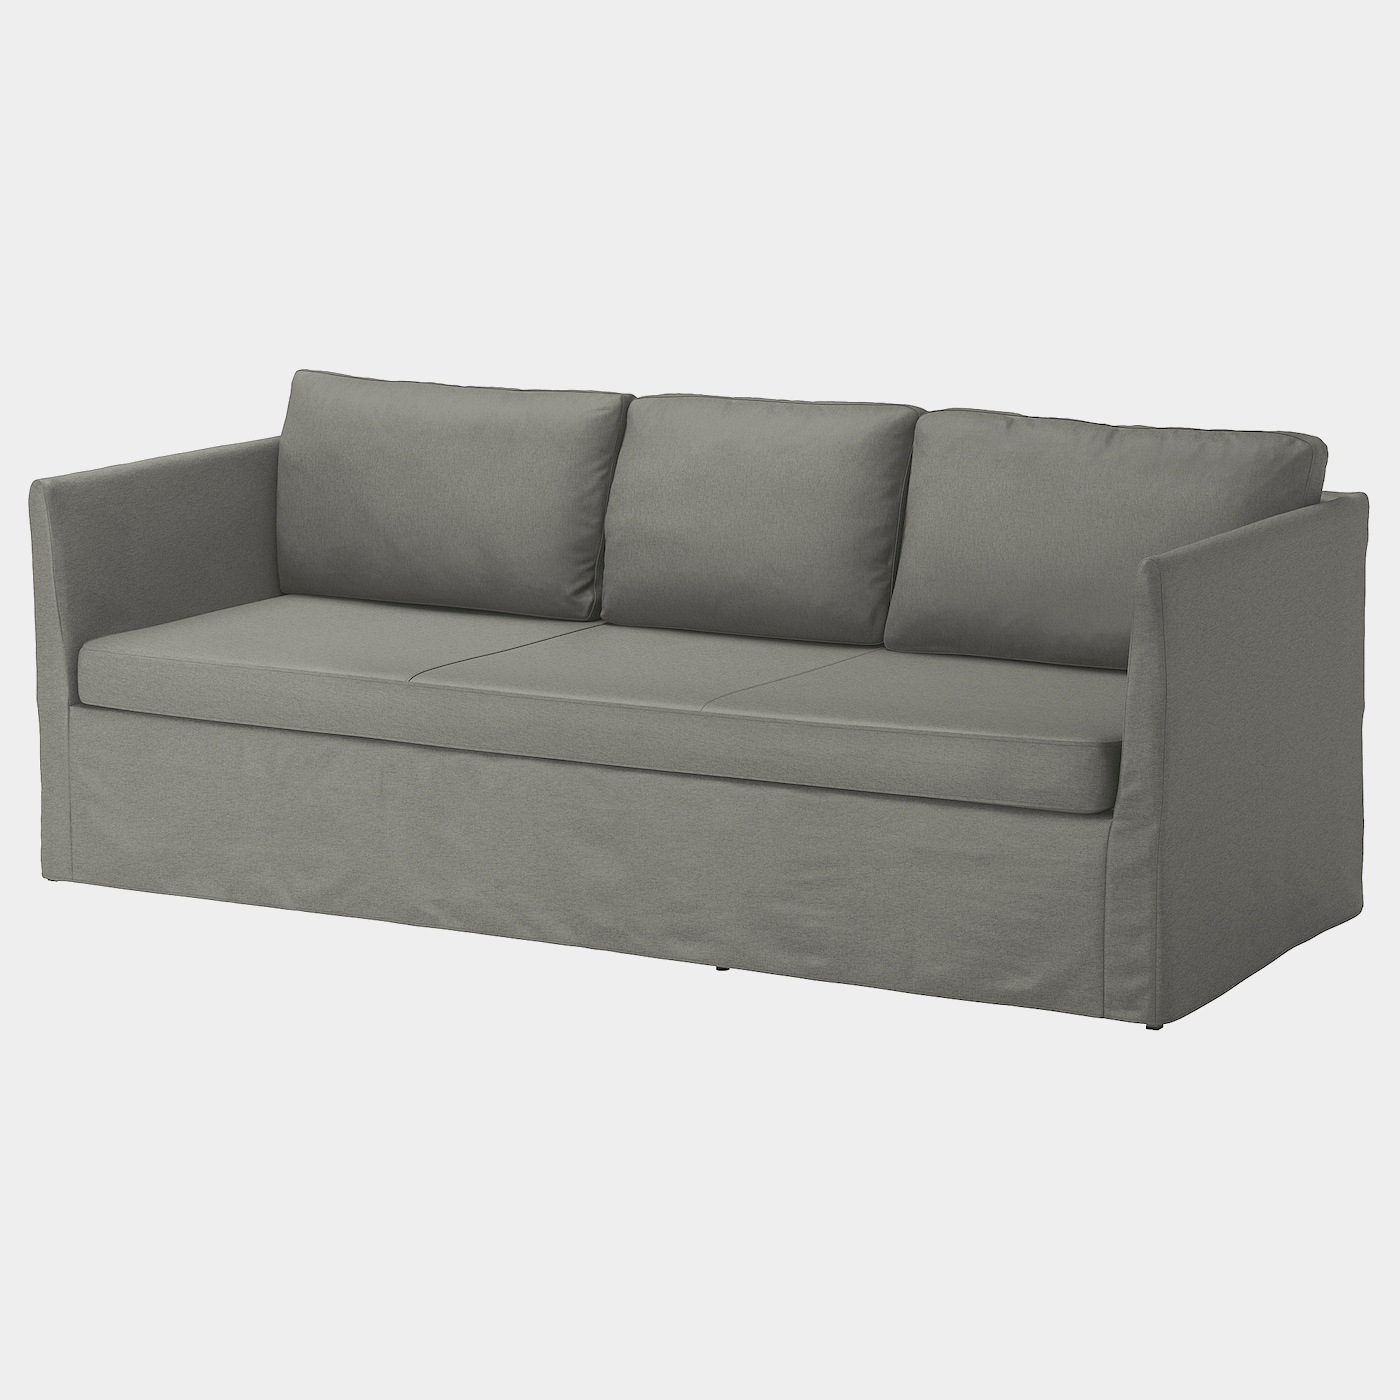 BRÅTHULT 3er-Sofa  - Sofas, Textil - Möbel Ideen für dein Zuhause von Home Trends. Möbel Trends von Social Media Influencer für dein Skandi Zuhause.